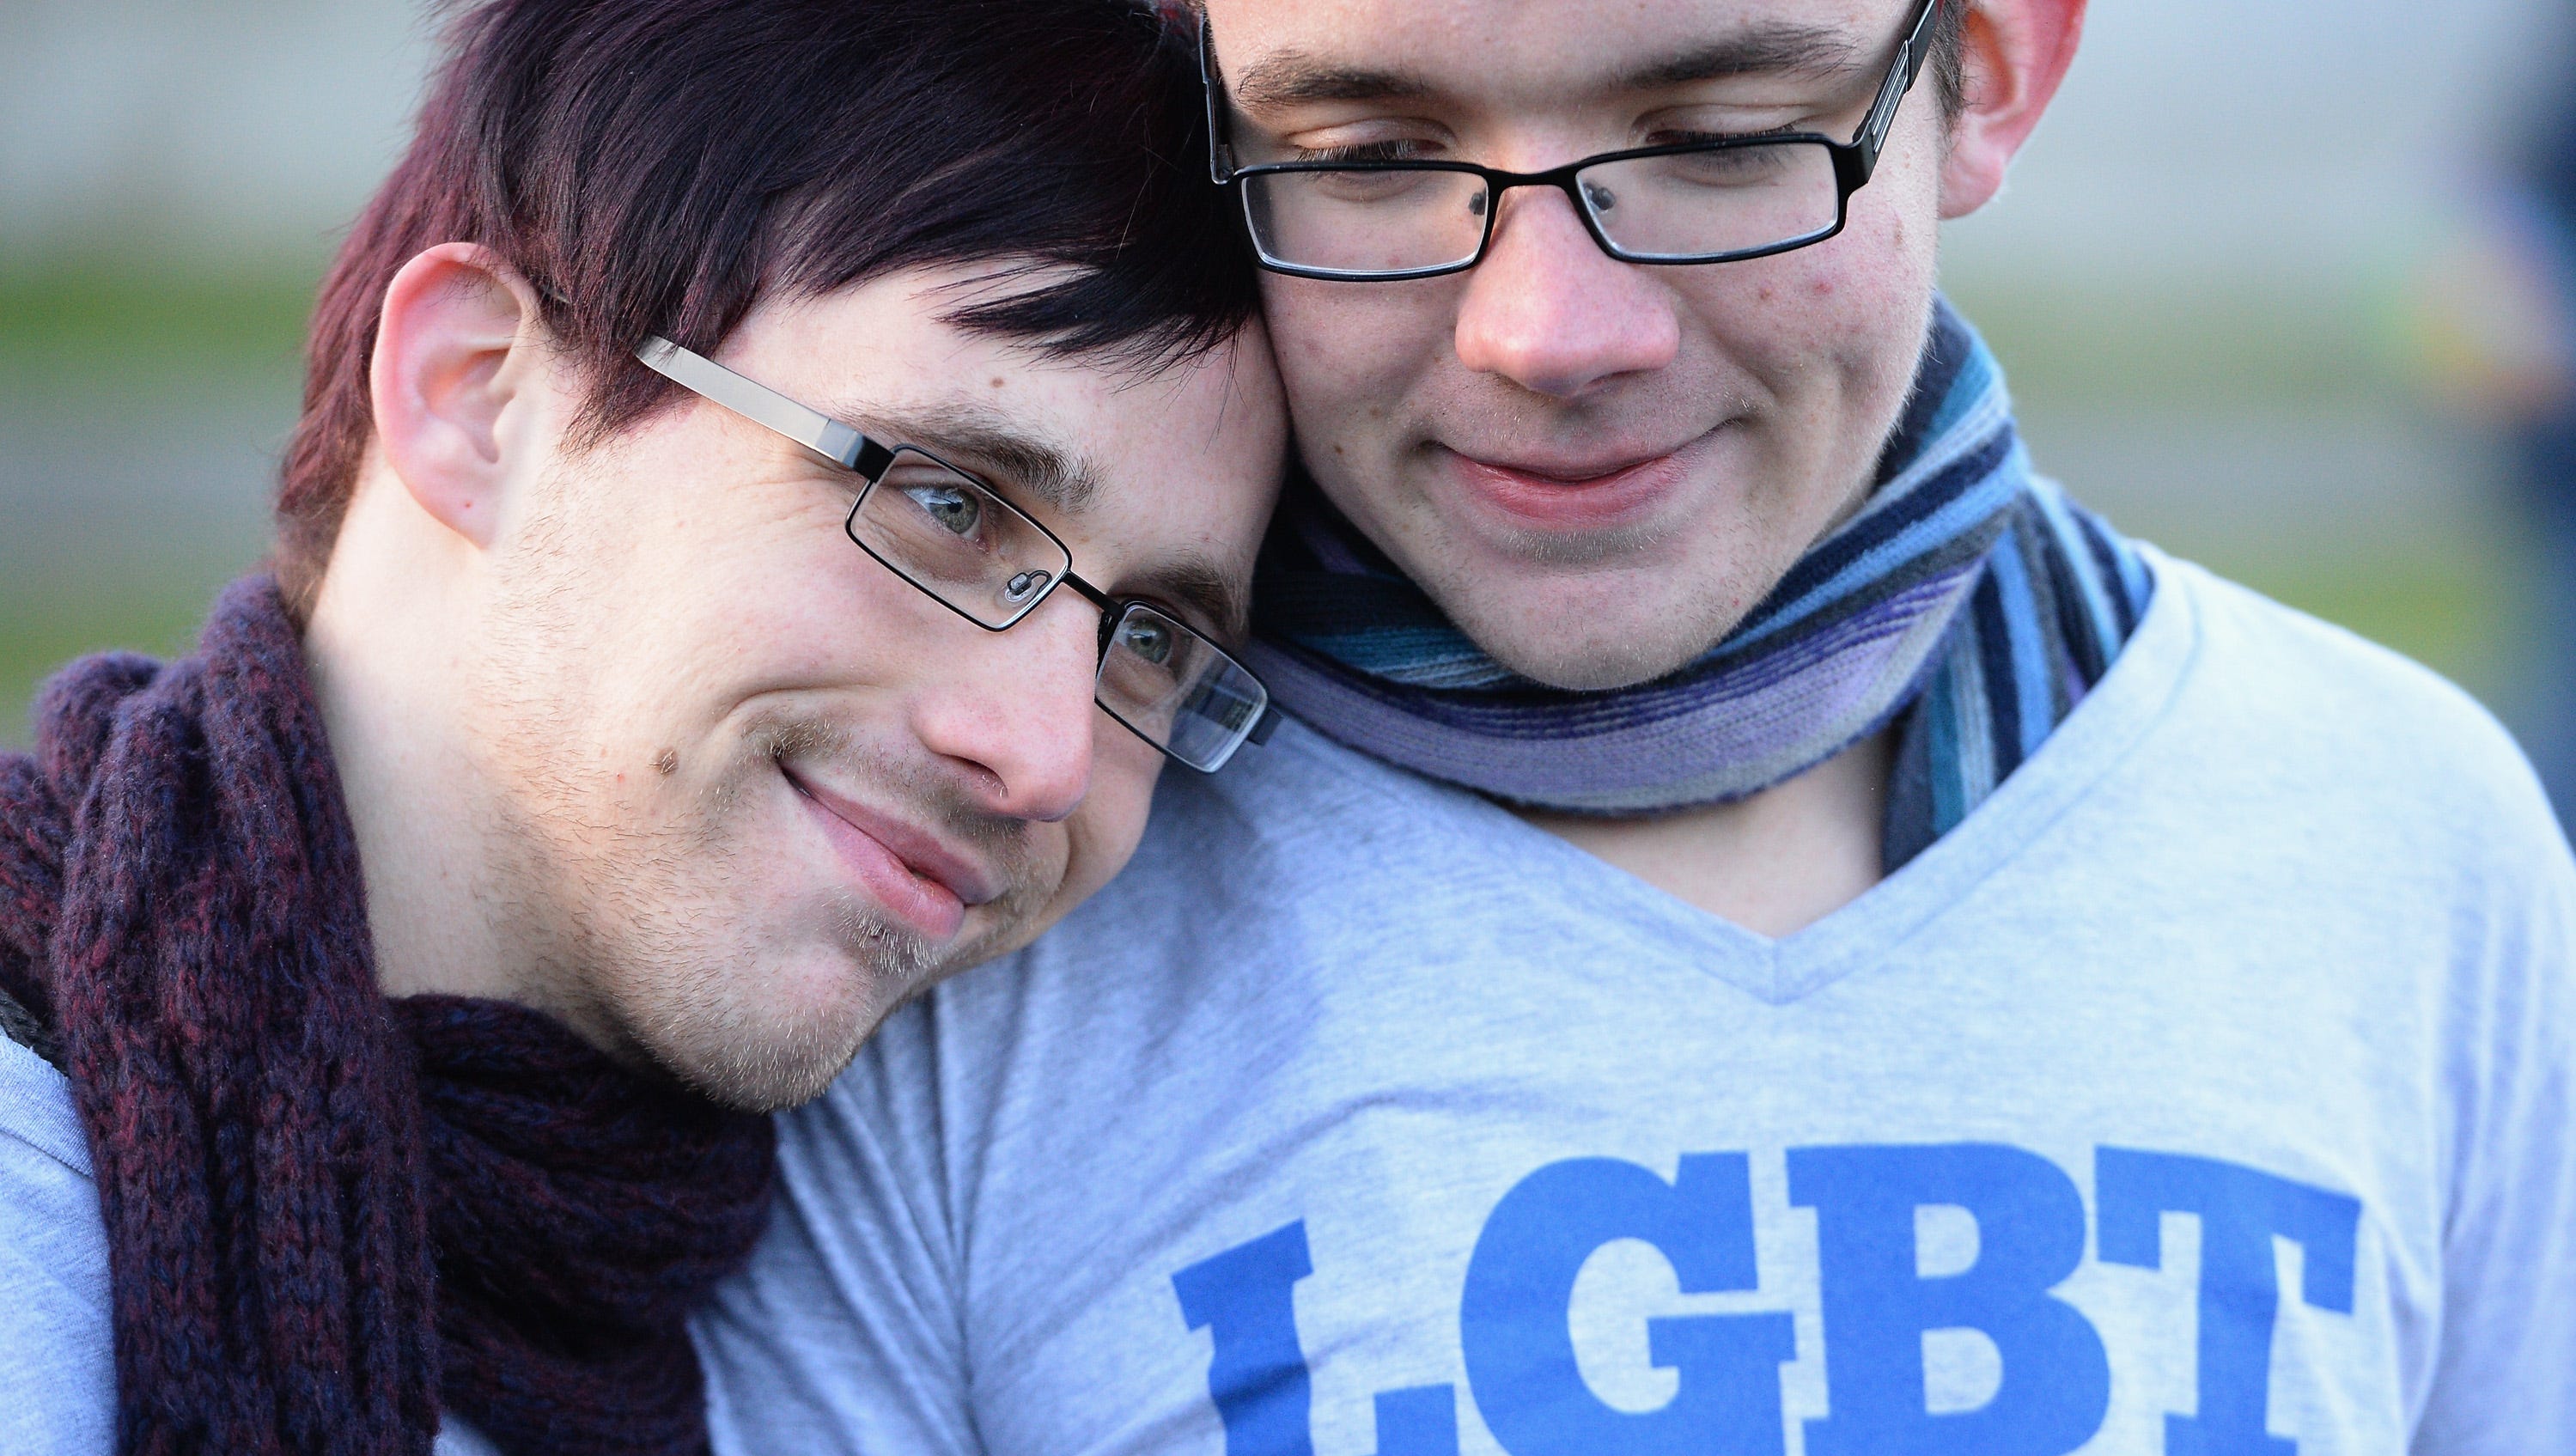 איך למצוא חבר באינטרנט הומו